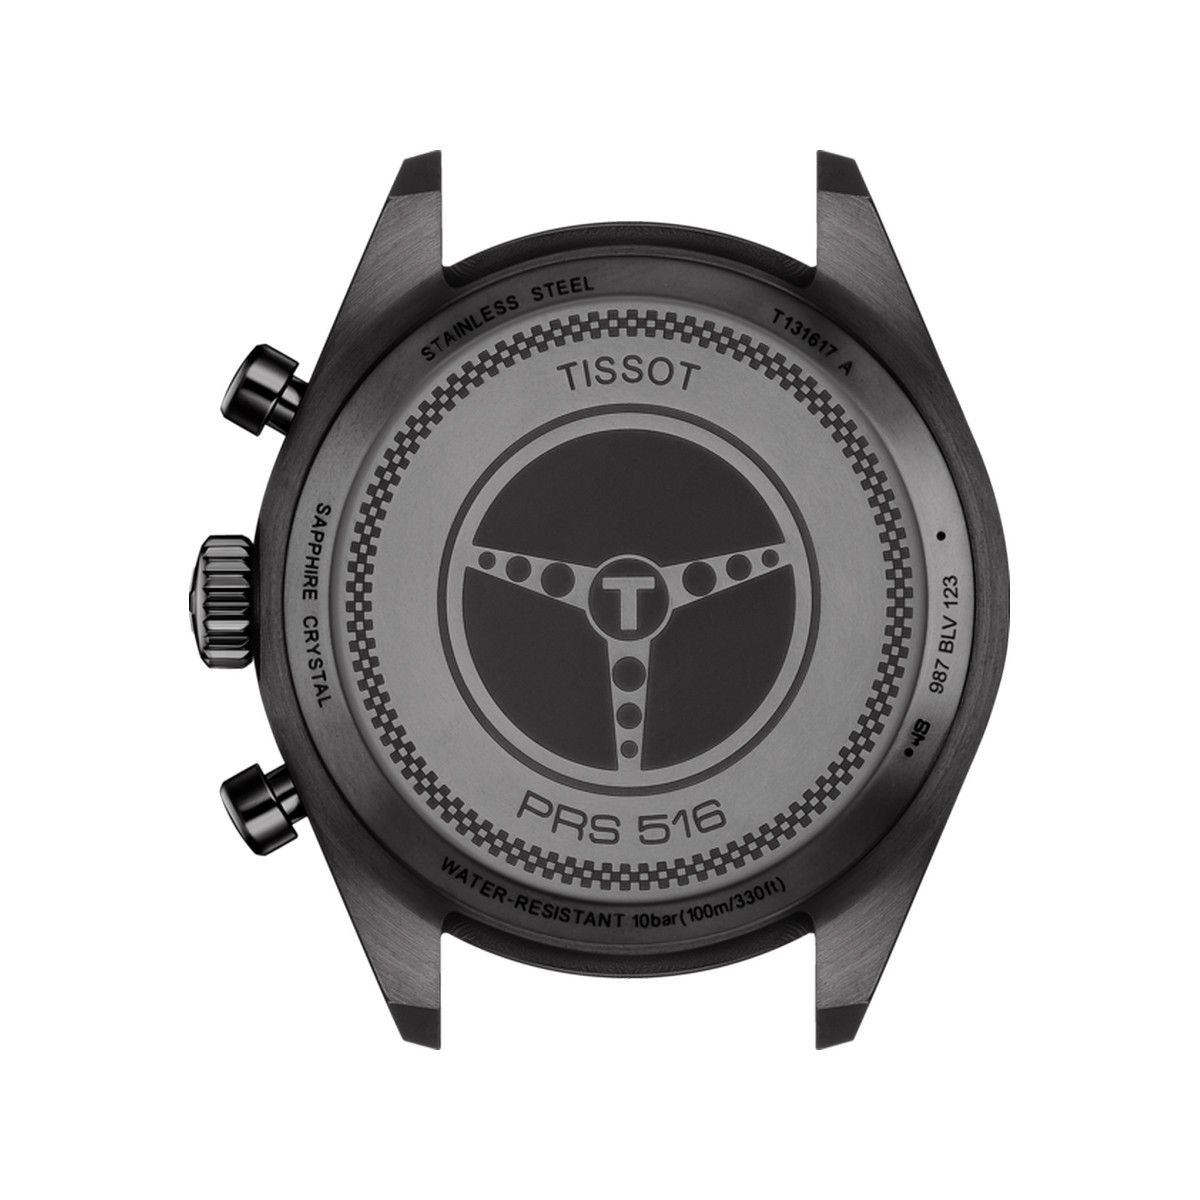 Montre Tissot homme chronographe acier bracelet cuir noir - vue 3